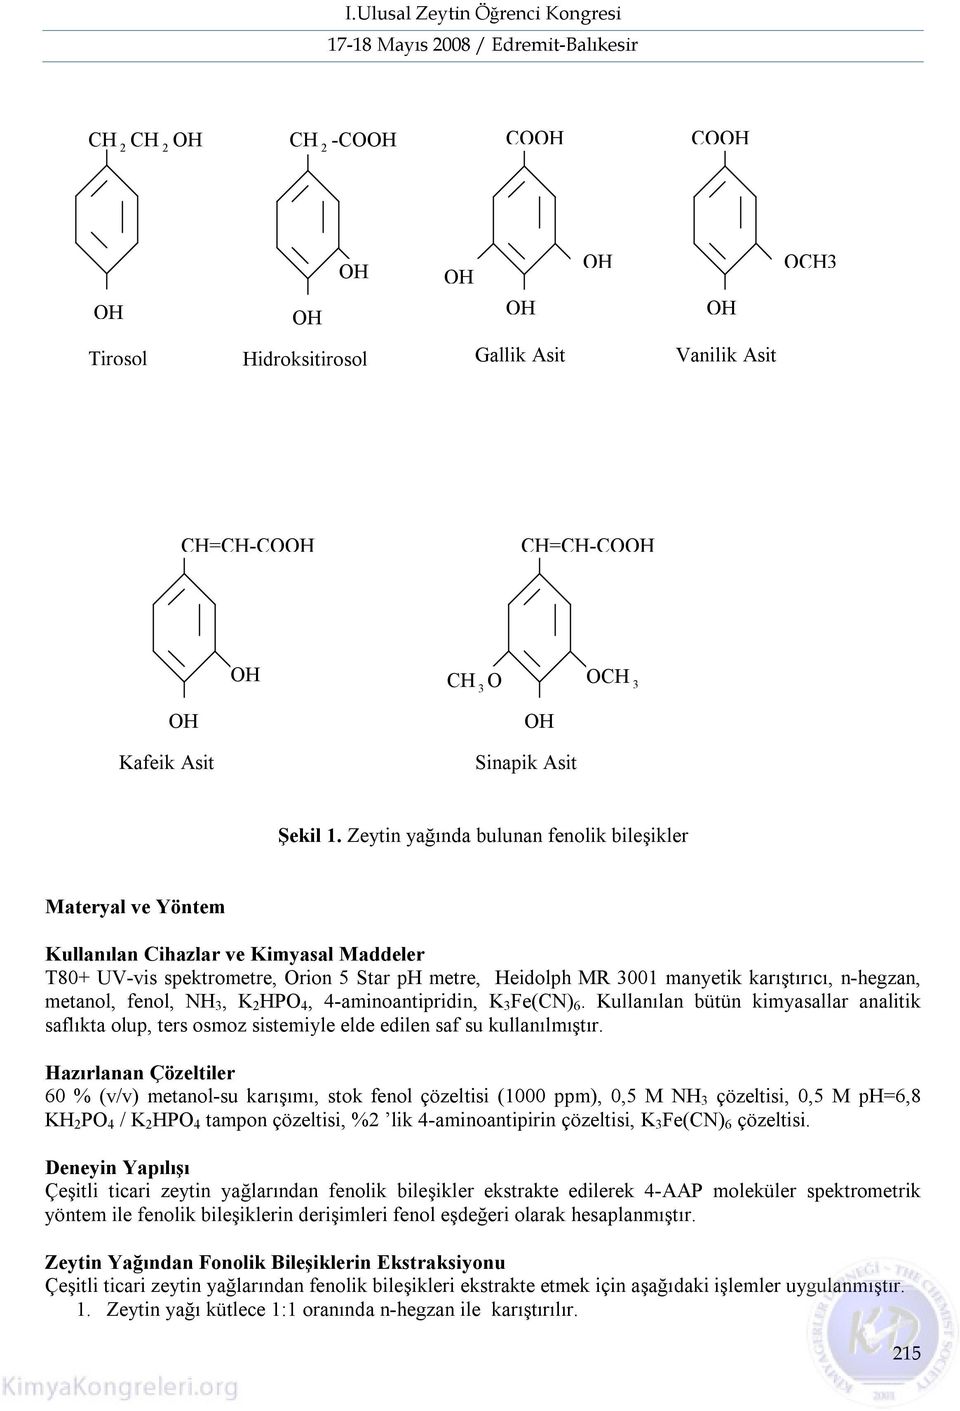 metanol, fenol, NH 3, K 2 HPO 4, 4-aminoantipridin, K 3 Fe(CN) 6. Kullanılan bütün kimyasallar analitik saflıkta olup, ters osmoz sistemiyle elde edilen saf su kullanılmıştır.